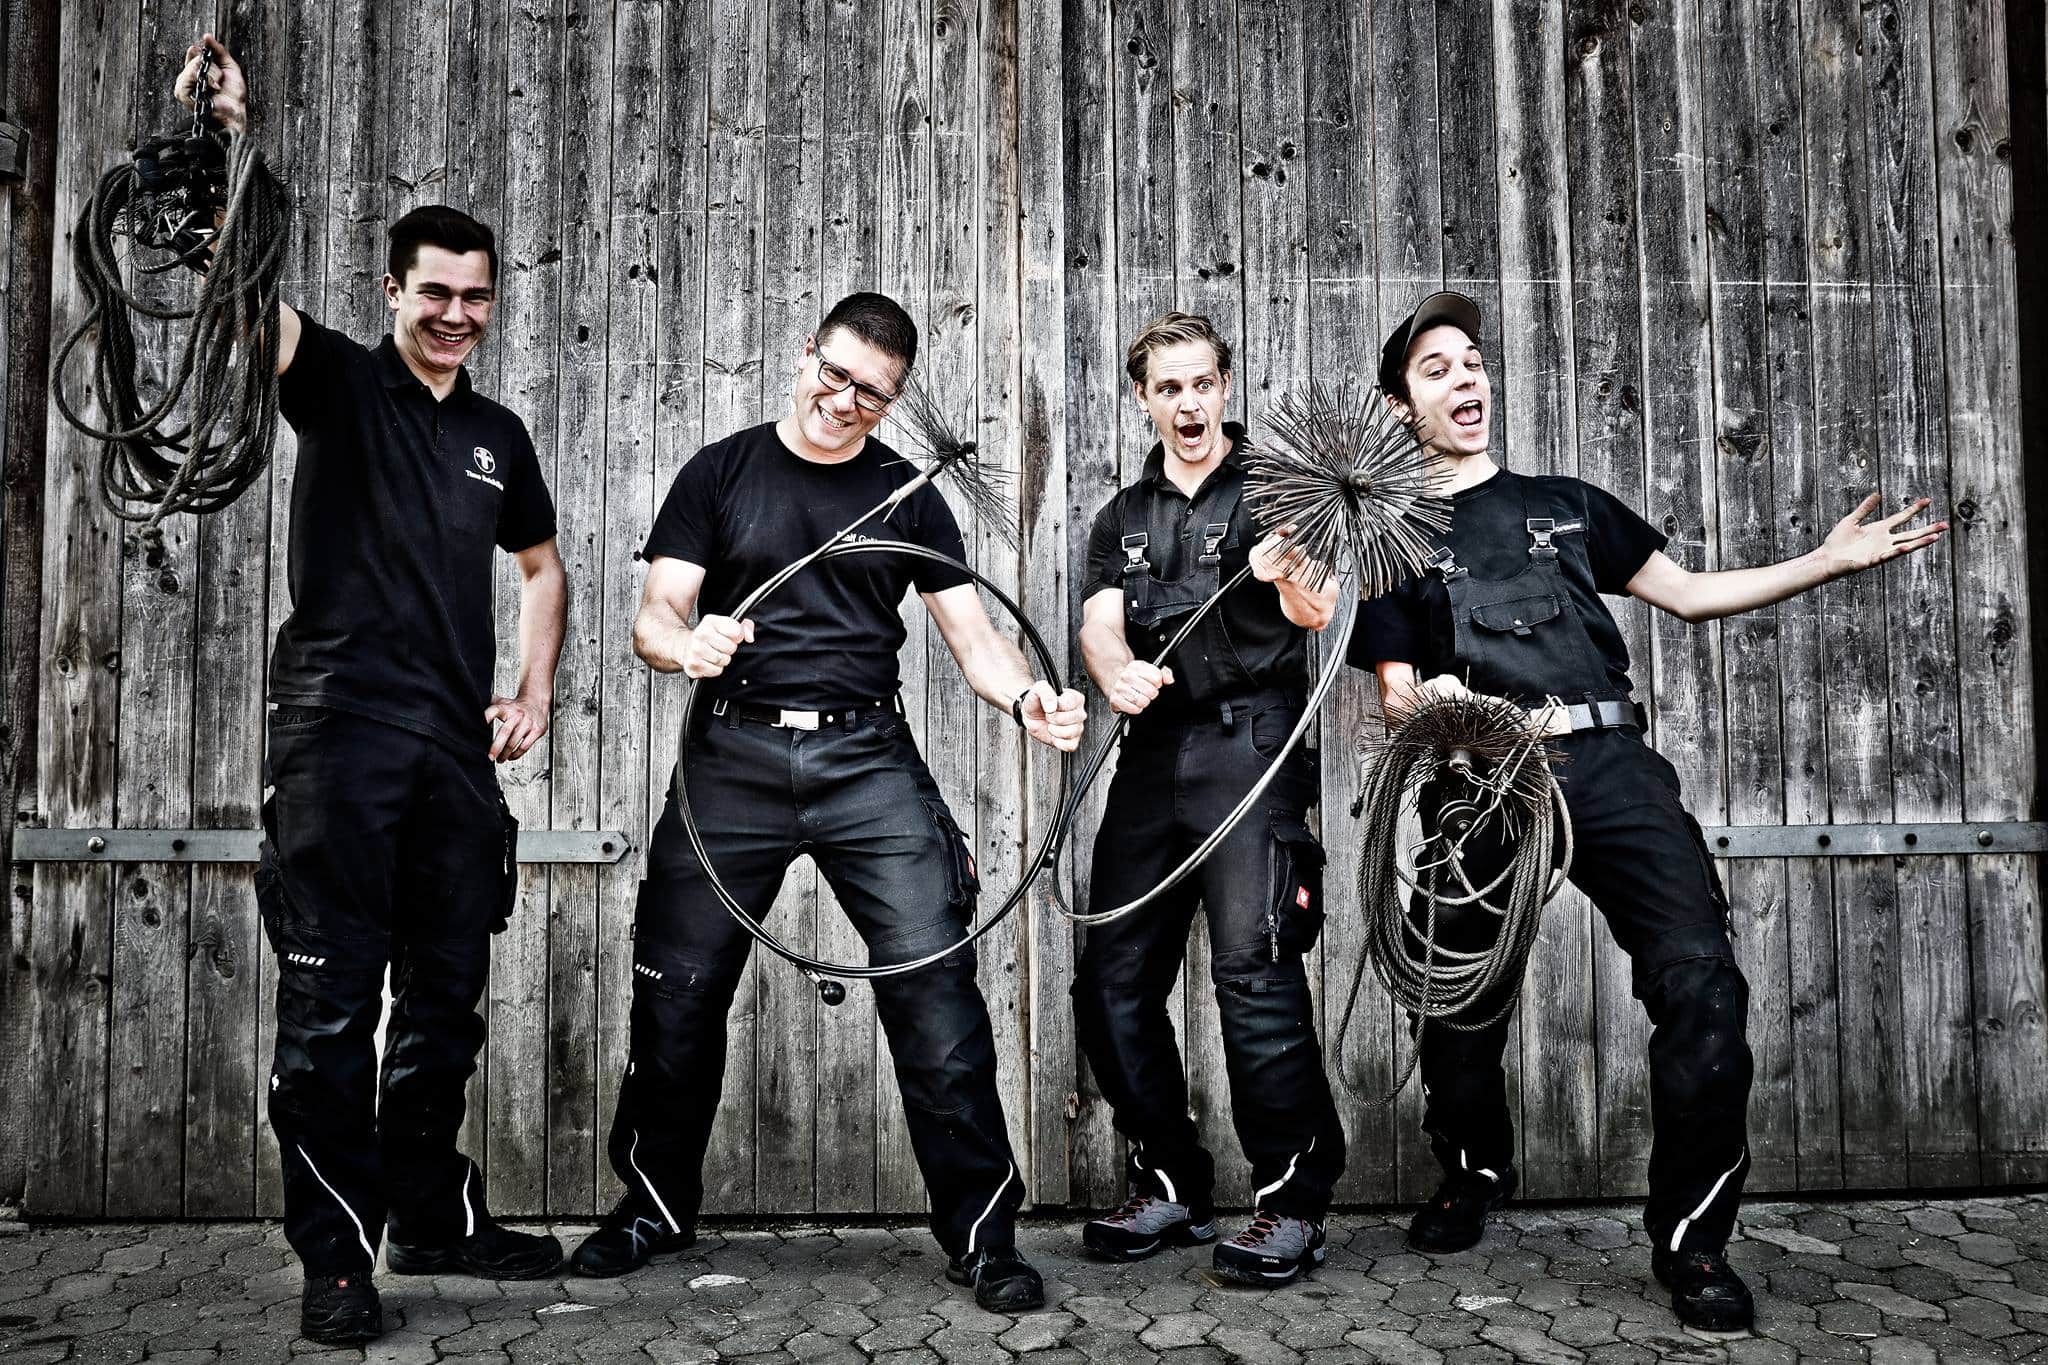 Das Team vom Schornsteinfegerbetrieb Ralf Gröbner mit Ihren Handwerkszeug